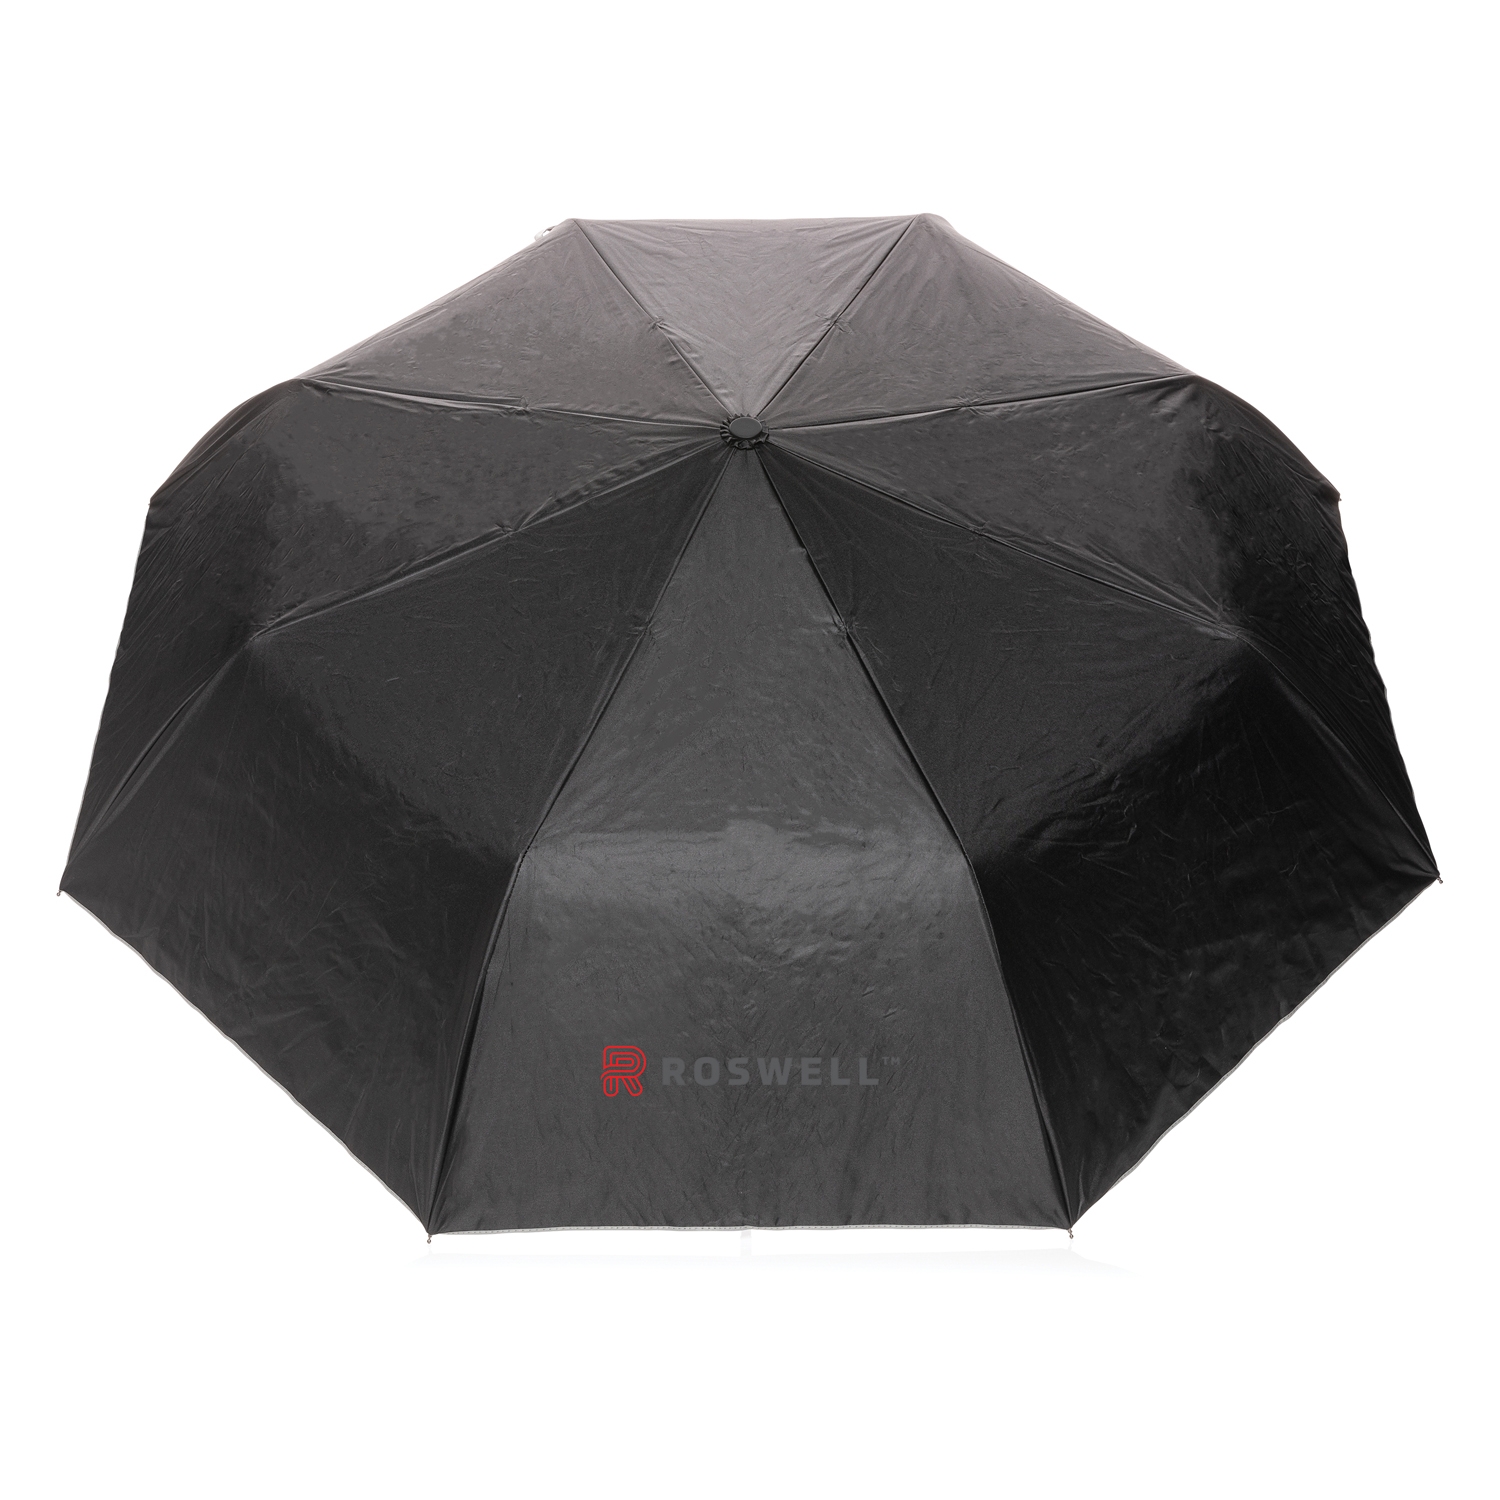 Маленький двухцветный зонт Impact из RPET AWARE™, d97 см, rpet; металл